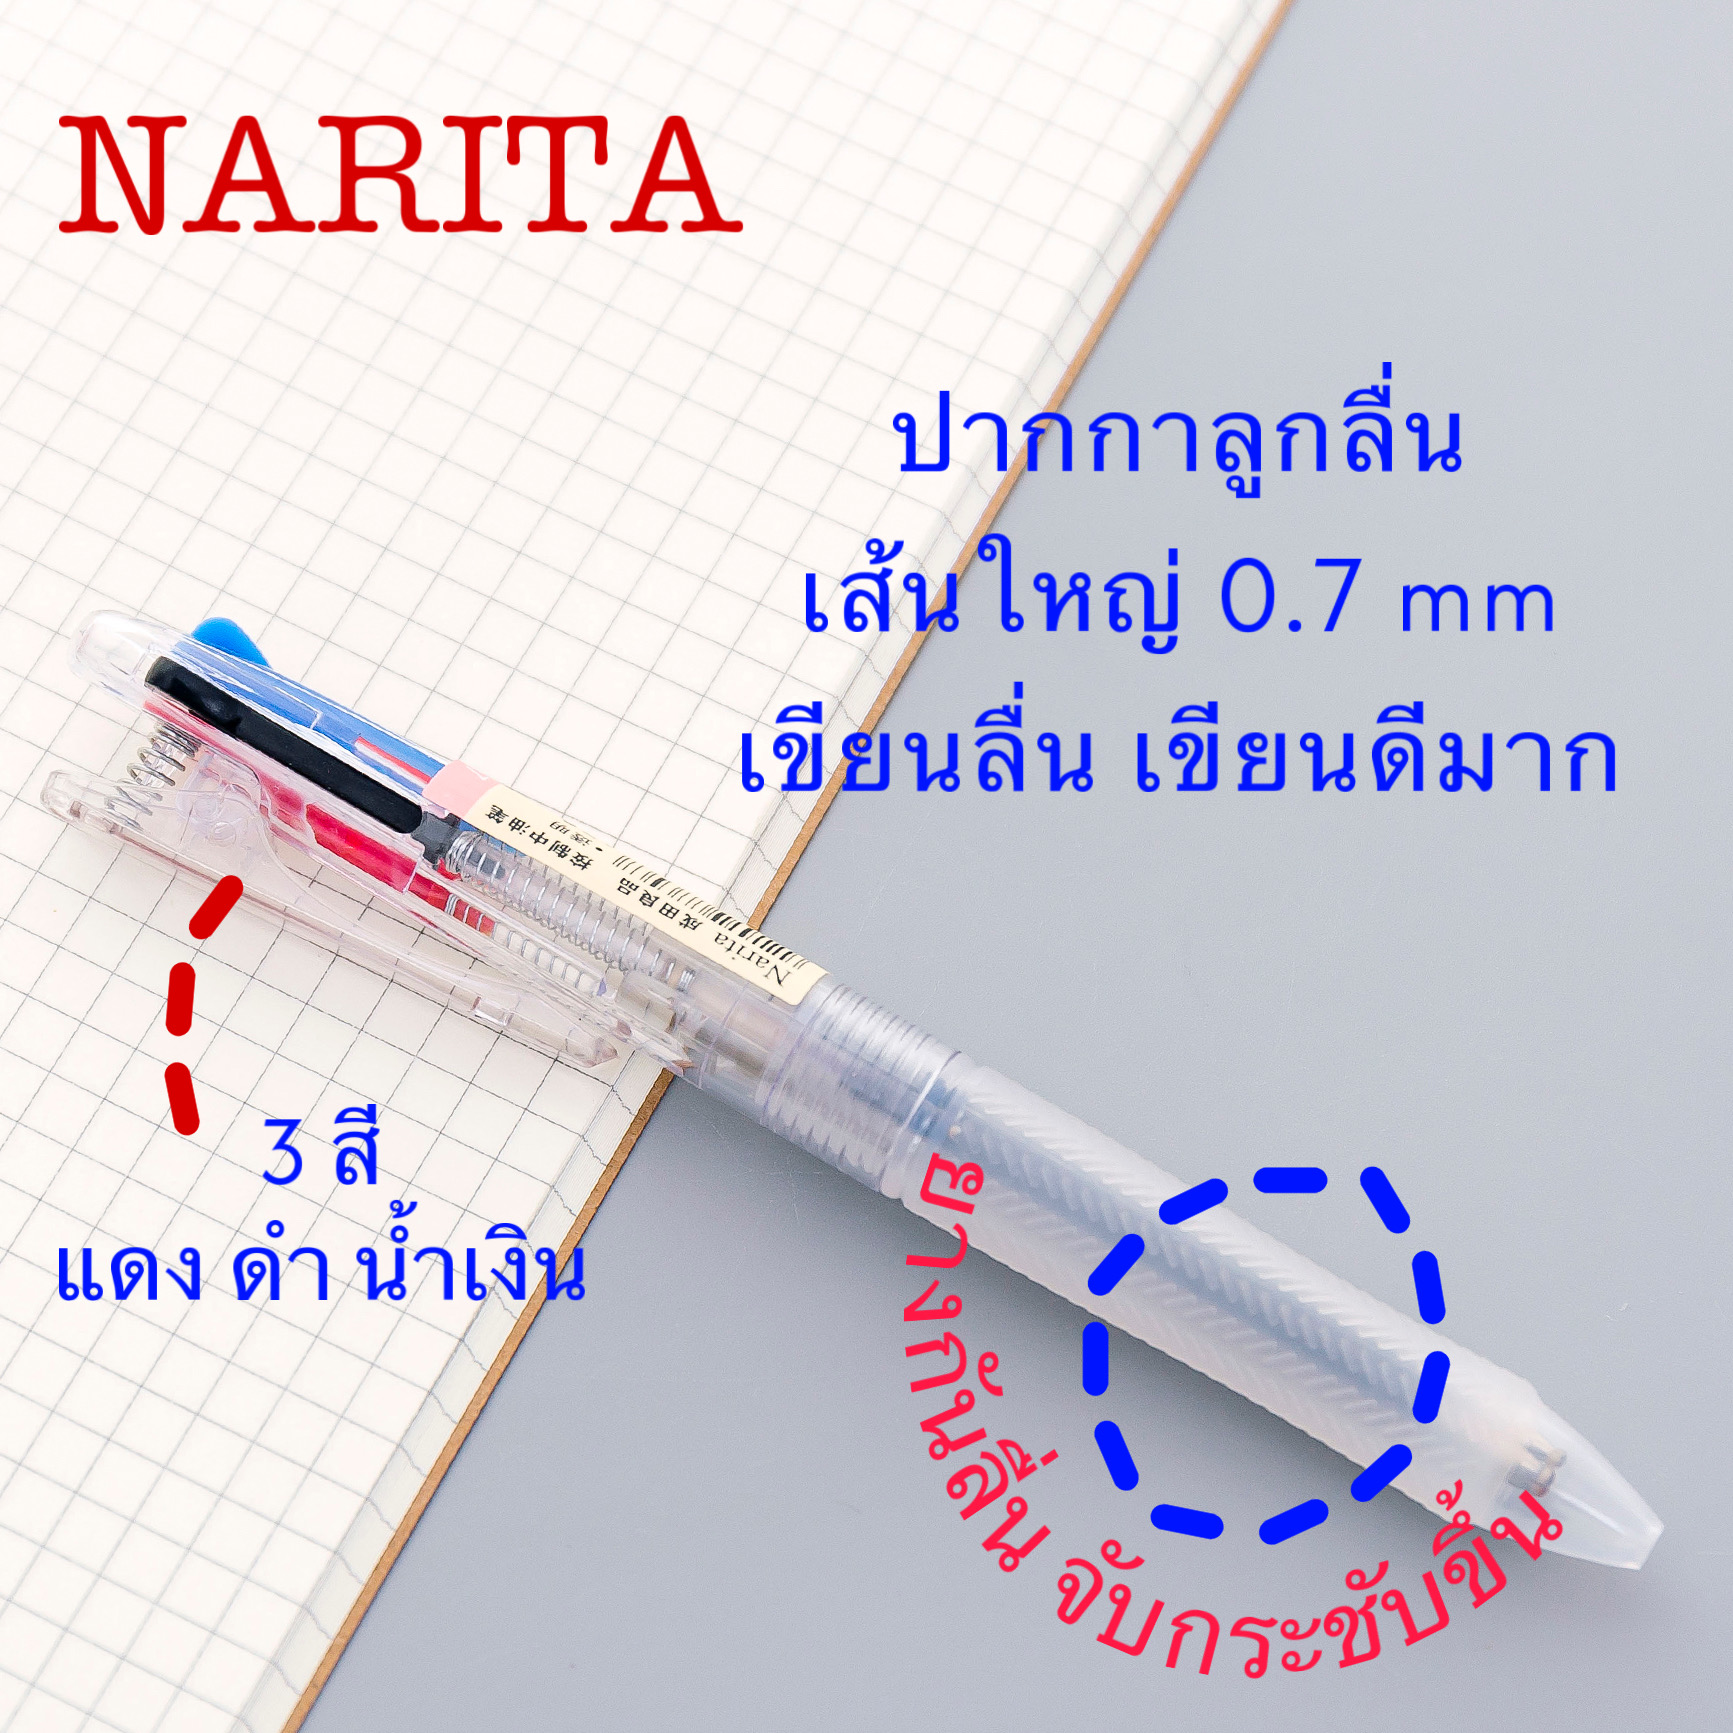 ปากกาลูกลื่น NARITA รุ่น 137 ดีไซน์ด้านกลม ขนาด 0.7 mm  3 สีใน 1 แท่ง